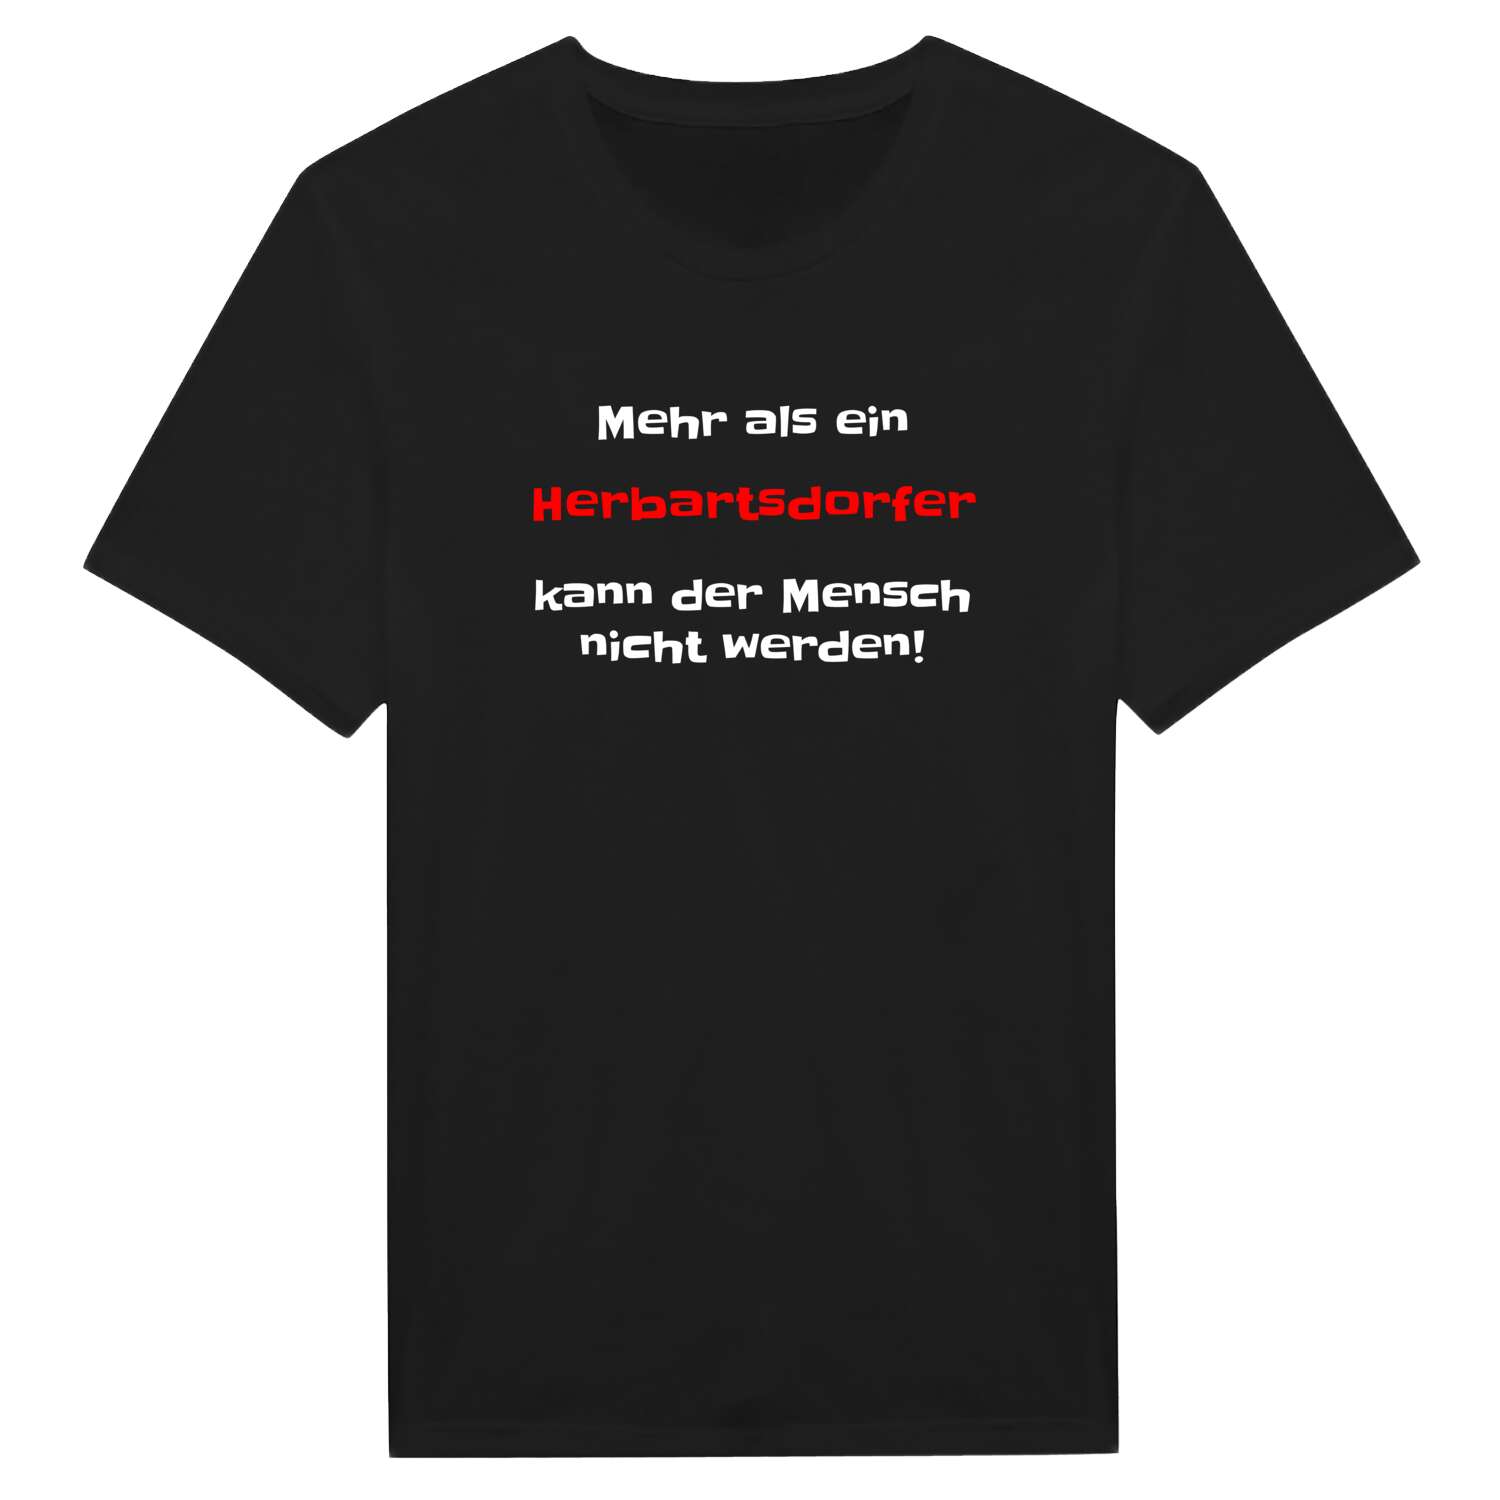 Herbartsdorf T-Shirt »Mehr als ein«